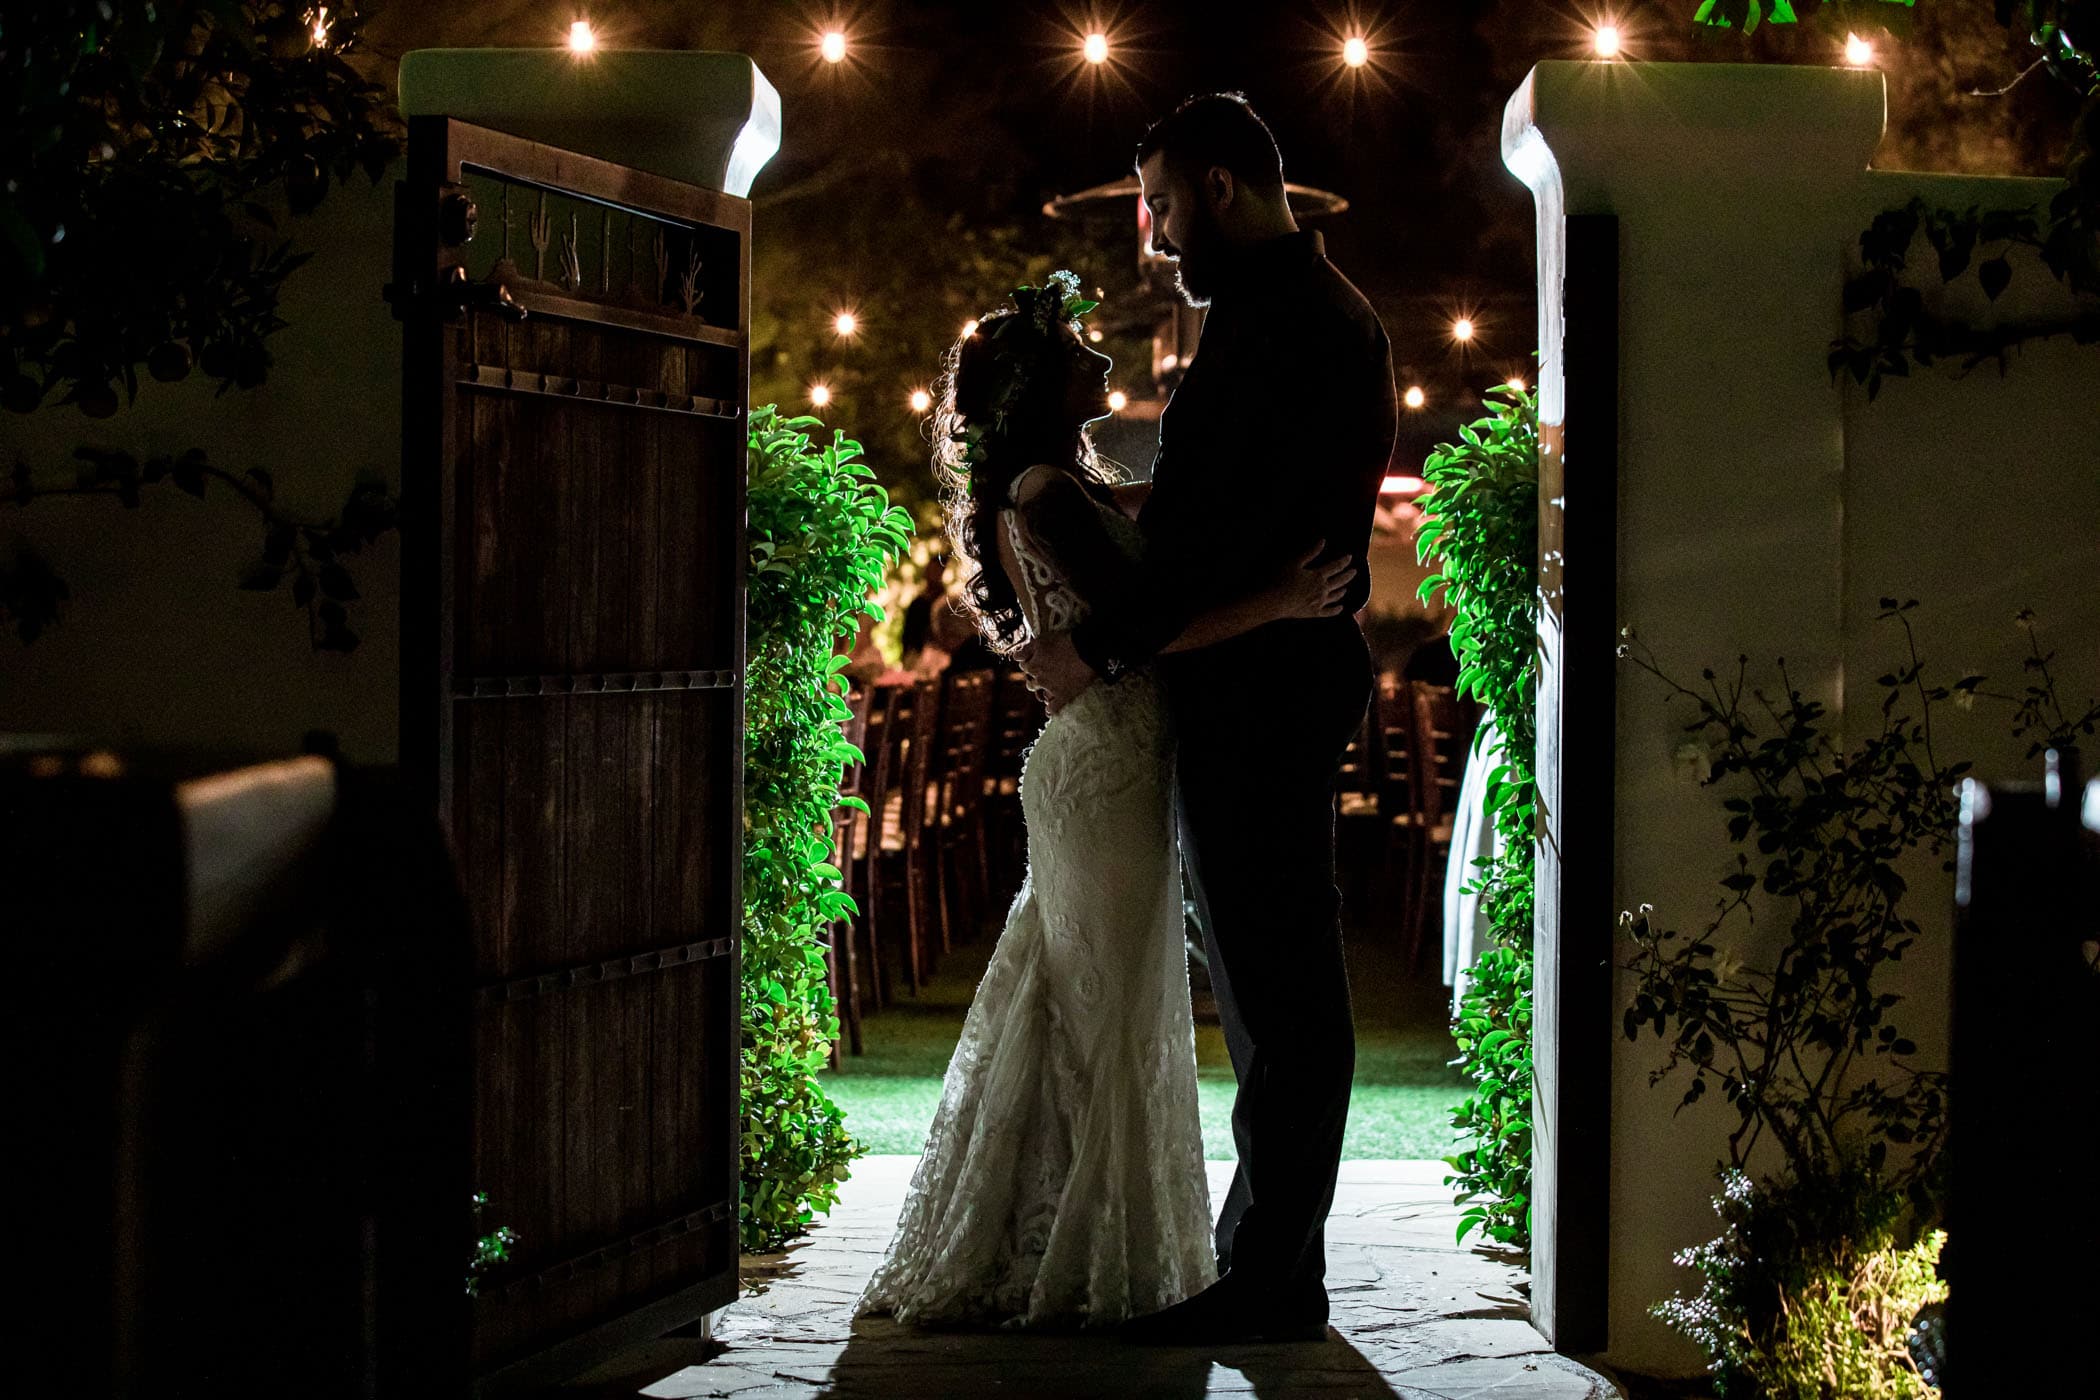 Bride and groom hugging in doorway silhouette